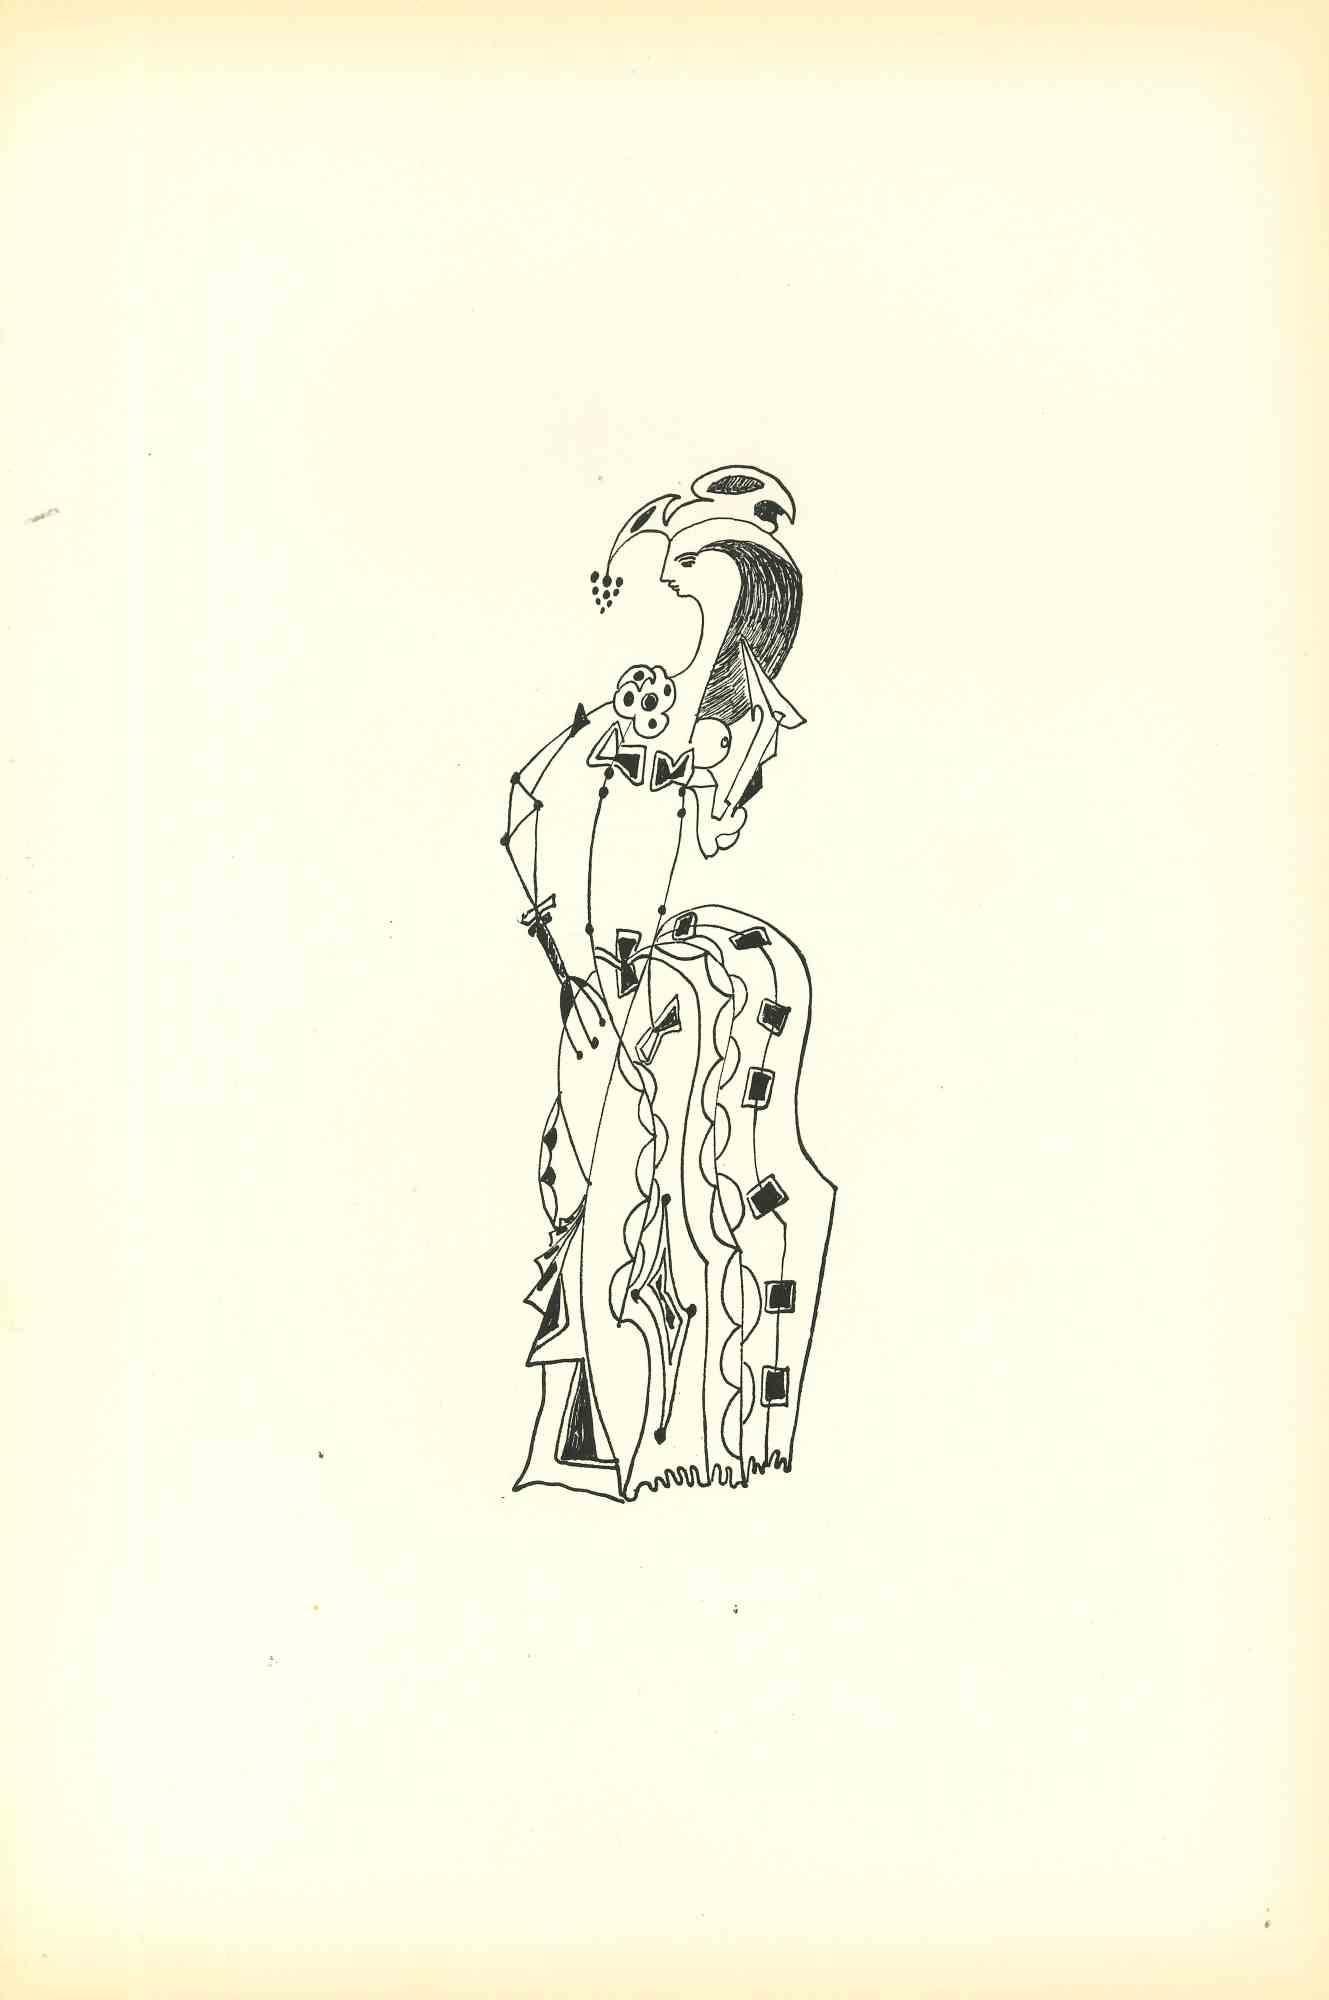 Composition Of Diodora est une litographie originale réalisée par Bruno Capacci en 1950.

L'œuvre fait partie d'une édition en 500 exemplaires de "La nef d'argent" Paris.

En bon état, sans signature.

Bruno CAPACCI (1906-1996) est un artiste né en